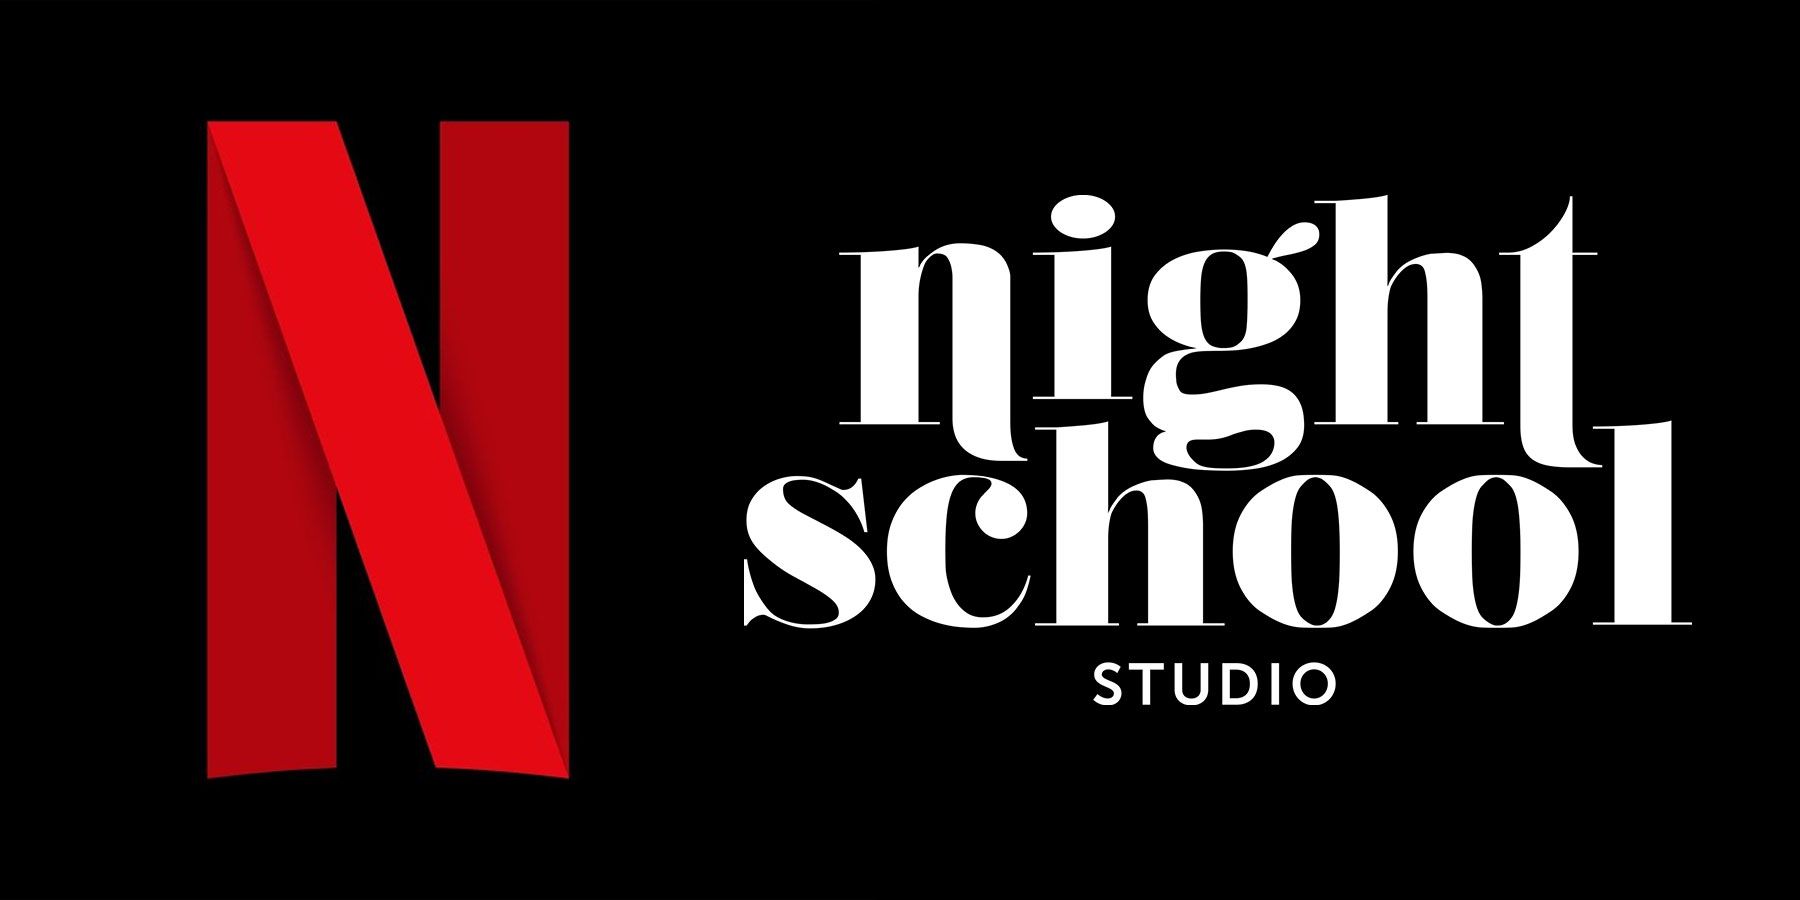 Die Übernahme von Night School Studio durch Netflix ist ein gutes Zeichen für seine Streaming-Ambitionen